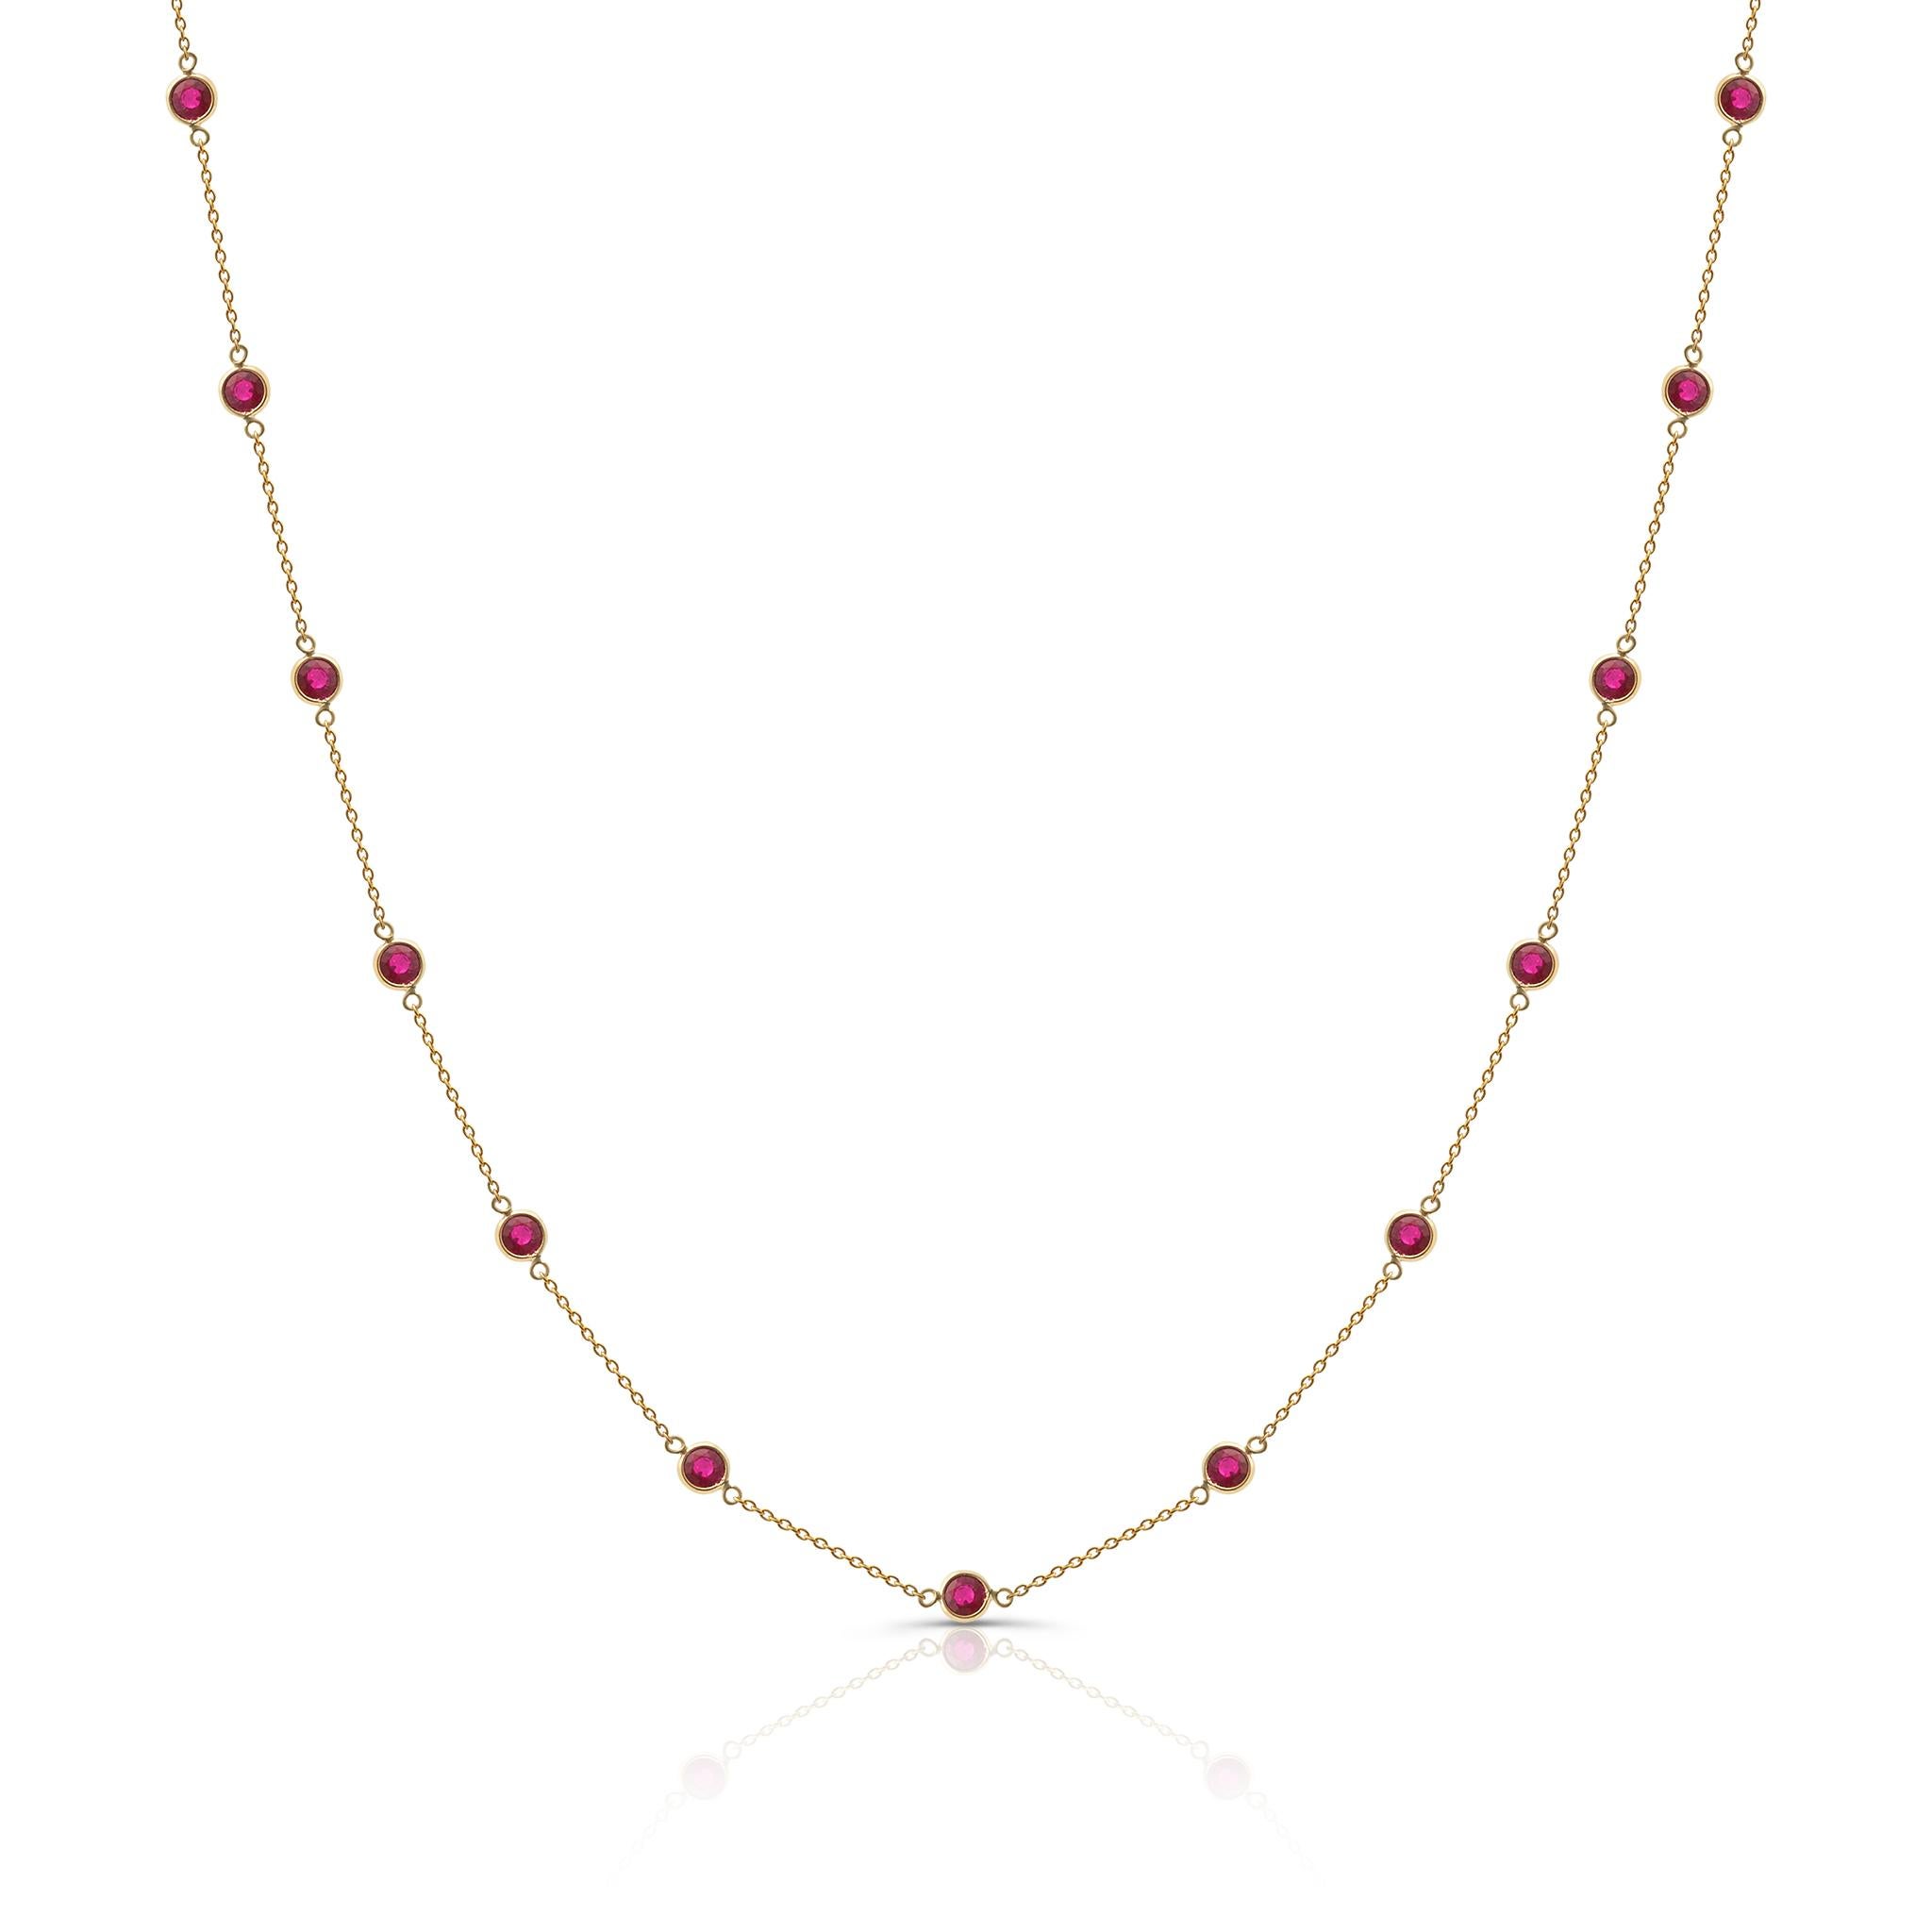 Le collier Tresor Beautiful présente 2,69 carats de rubis. Les colliers sont une ode à la beauté luxueuse et classique, avec des pierres précieuses étincelantes et des teintes féminines. Leur design contemporain et moderne leur confère une grande